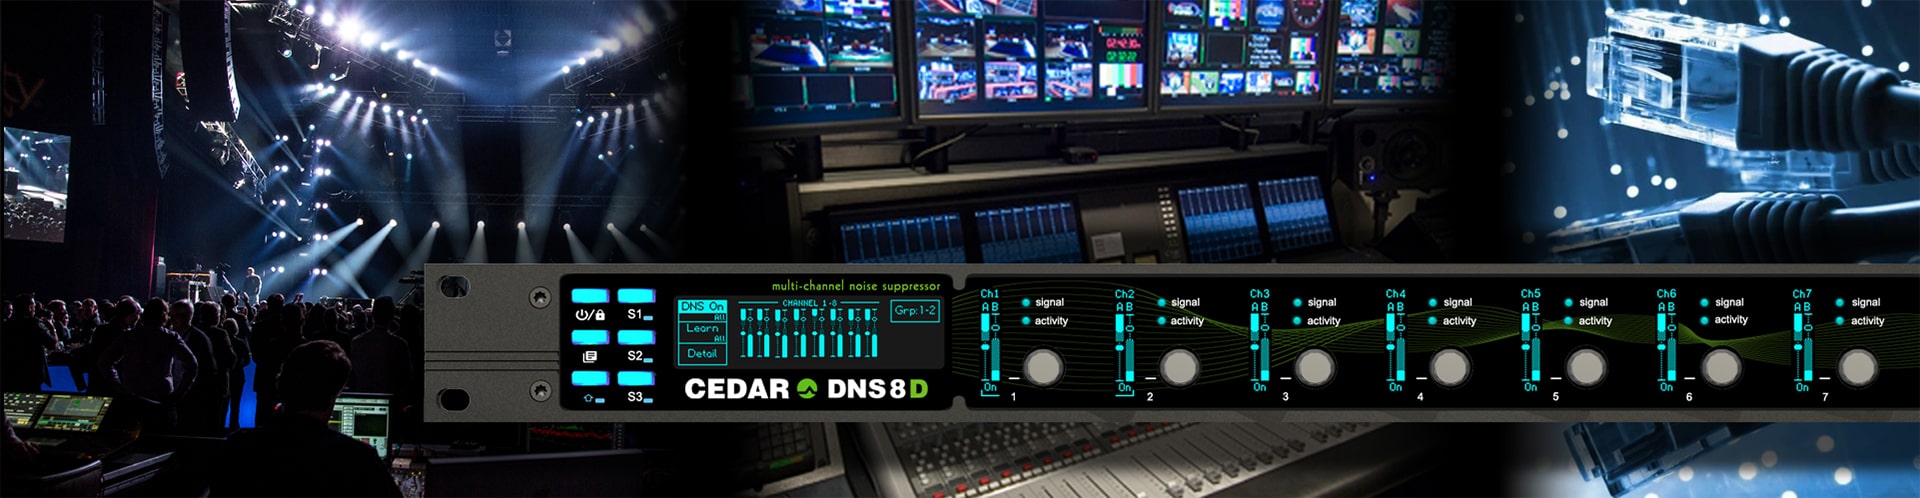 Cedar DNS 8 Live